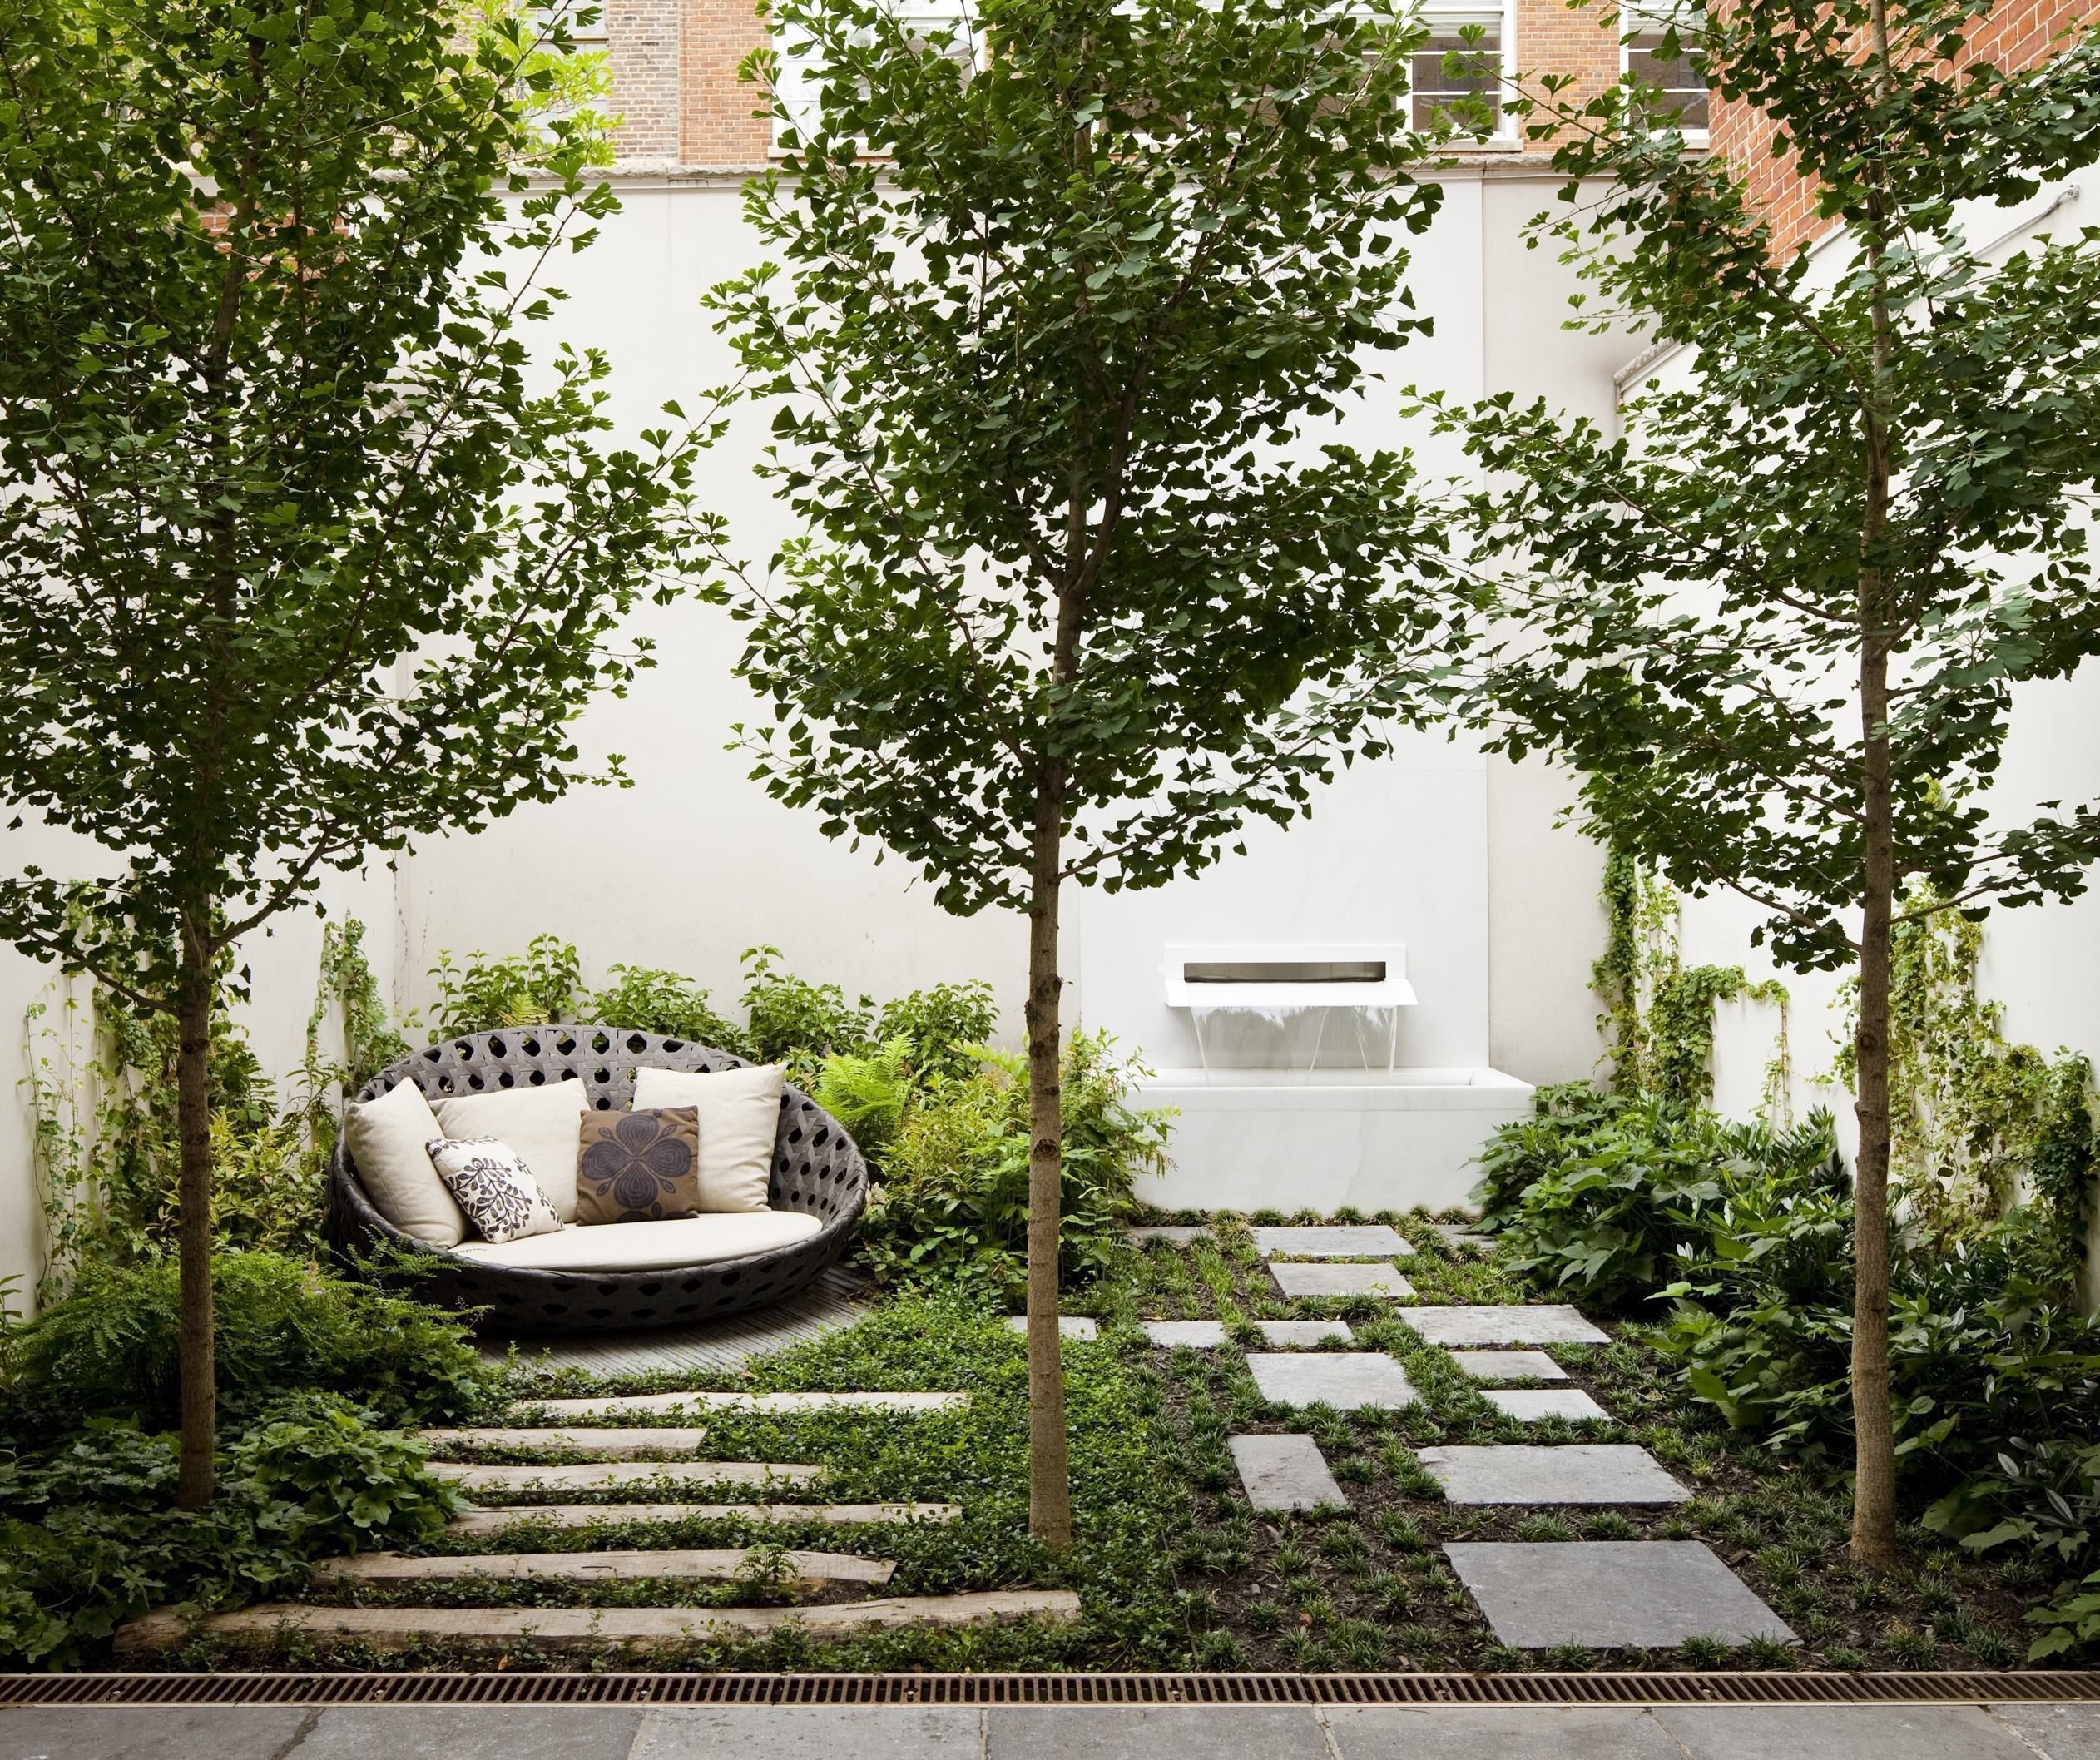 Плодовый сад дома. Peter Berg ландшафтный Архитектор. ПЛОДОЙ сад в ландшафтном дизайне.